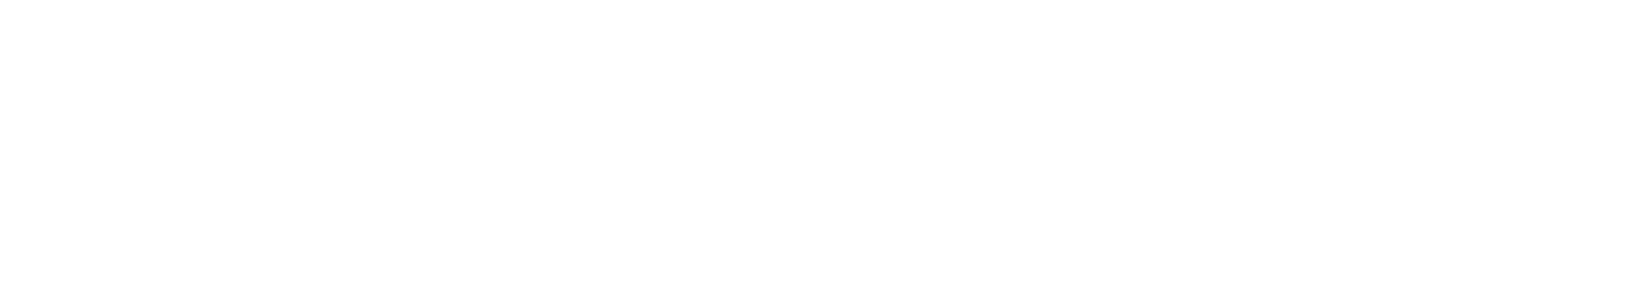 Macquarie logo grand pour les fonds sombres (PNG transparent)